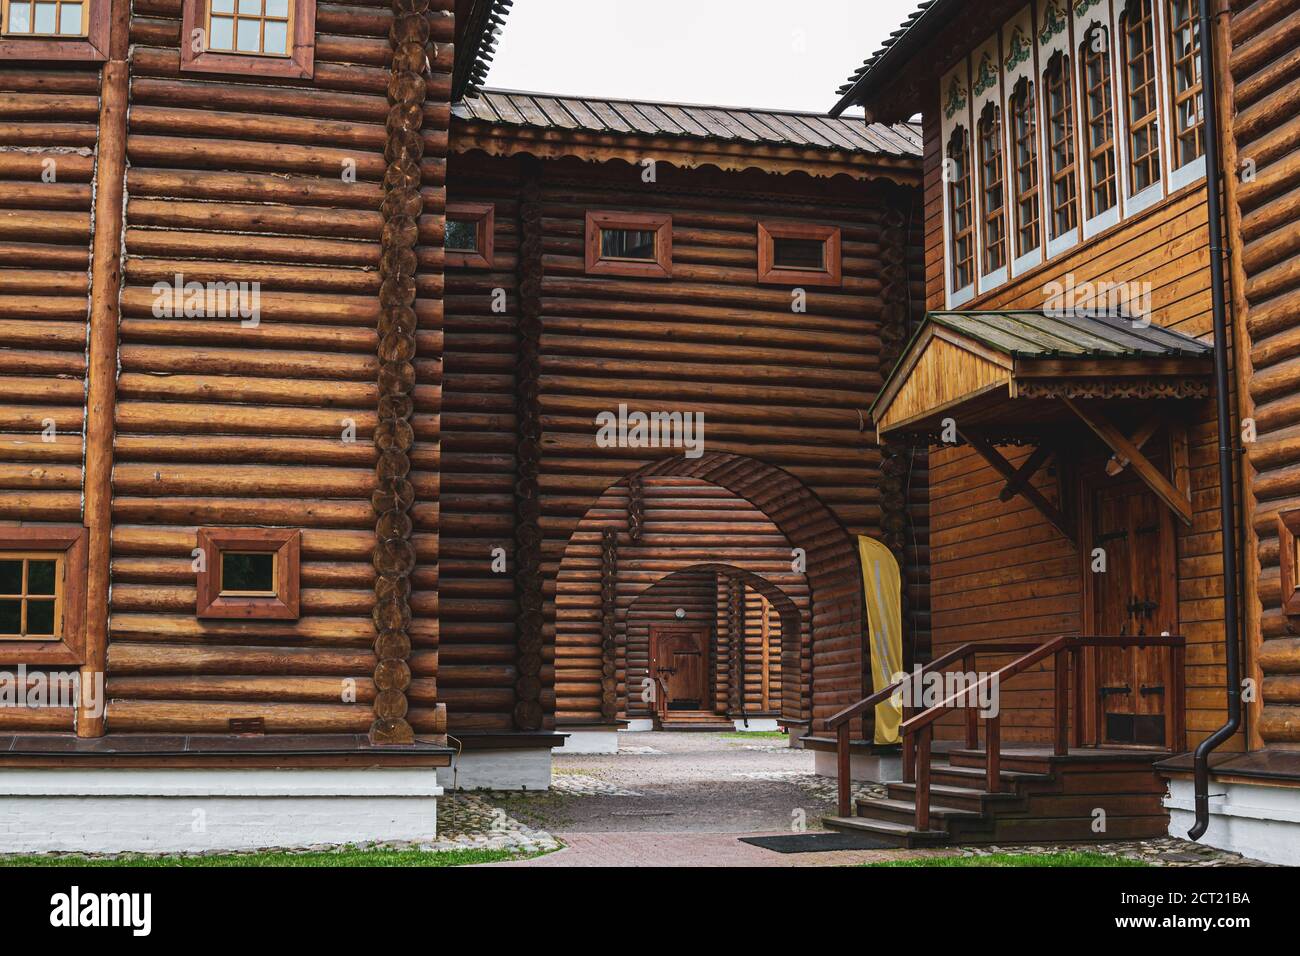 Mosca, Russia - 5 settembre 2020. Palazzo in legno di Tsar Alexei Mikhailovich Romanov, Padre di Pietro 1. Edificio del XVII secolo nel parco Kolomenskoye Foto Stock